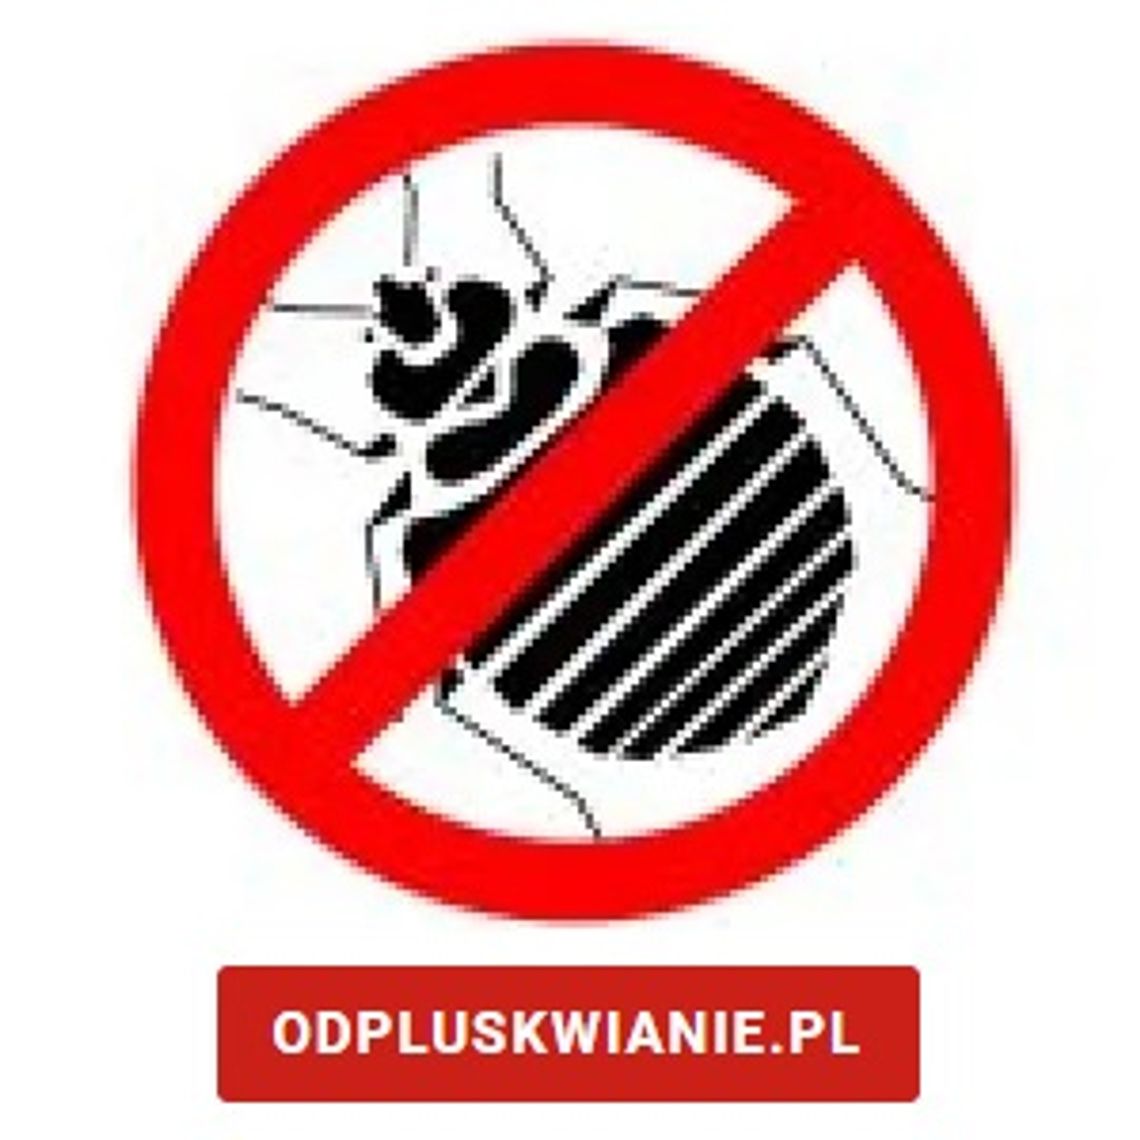 Usuwanie pluskiew - odpluskwianie.pl